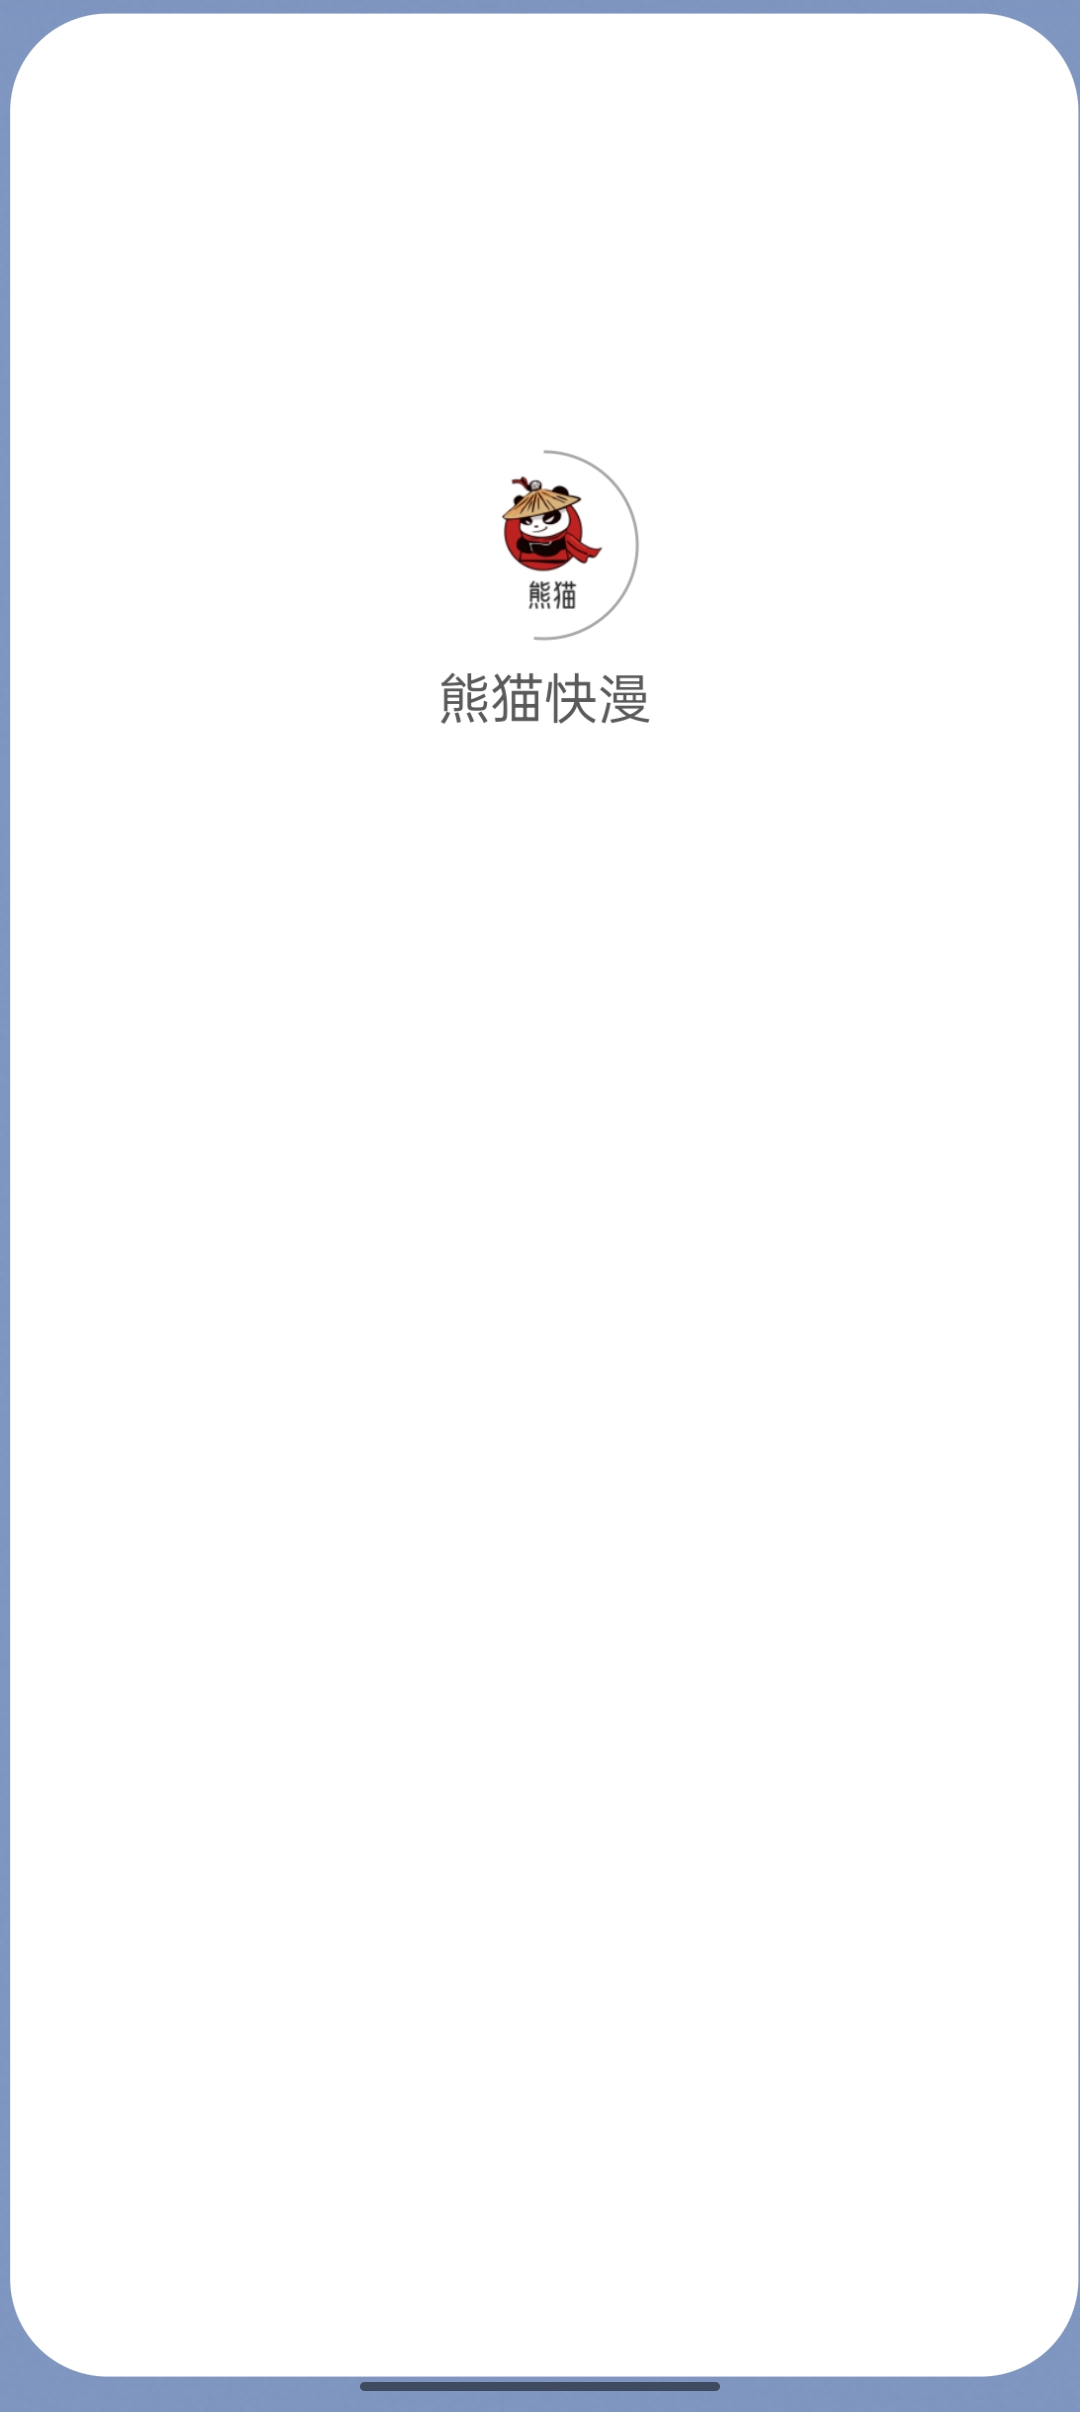 熊猫快漫软件免费下载-熊猫快漫appv1.5 最新版